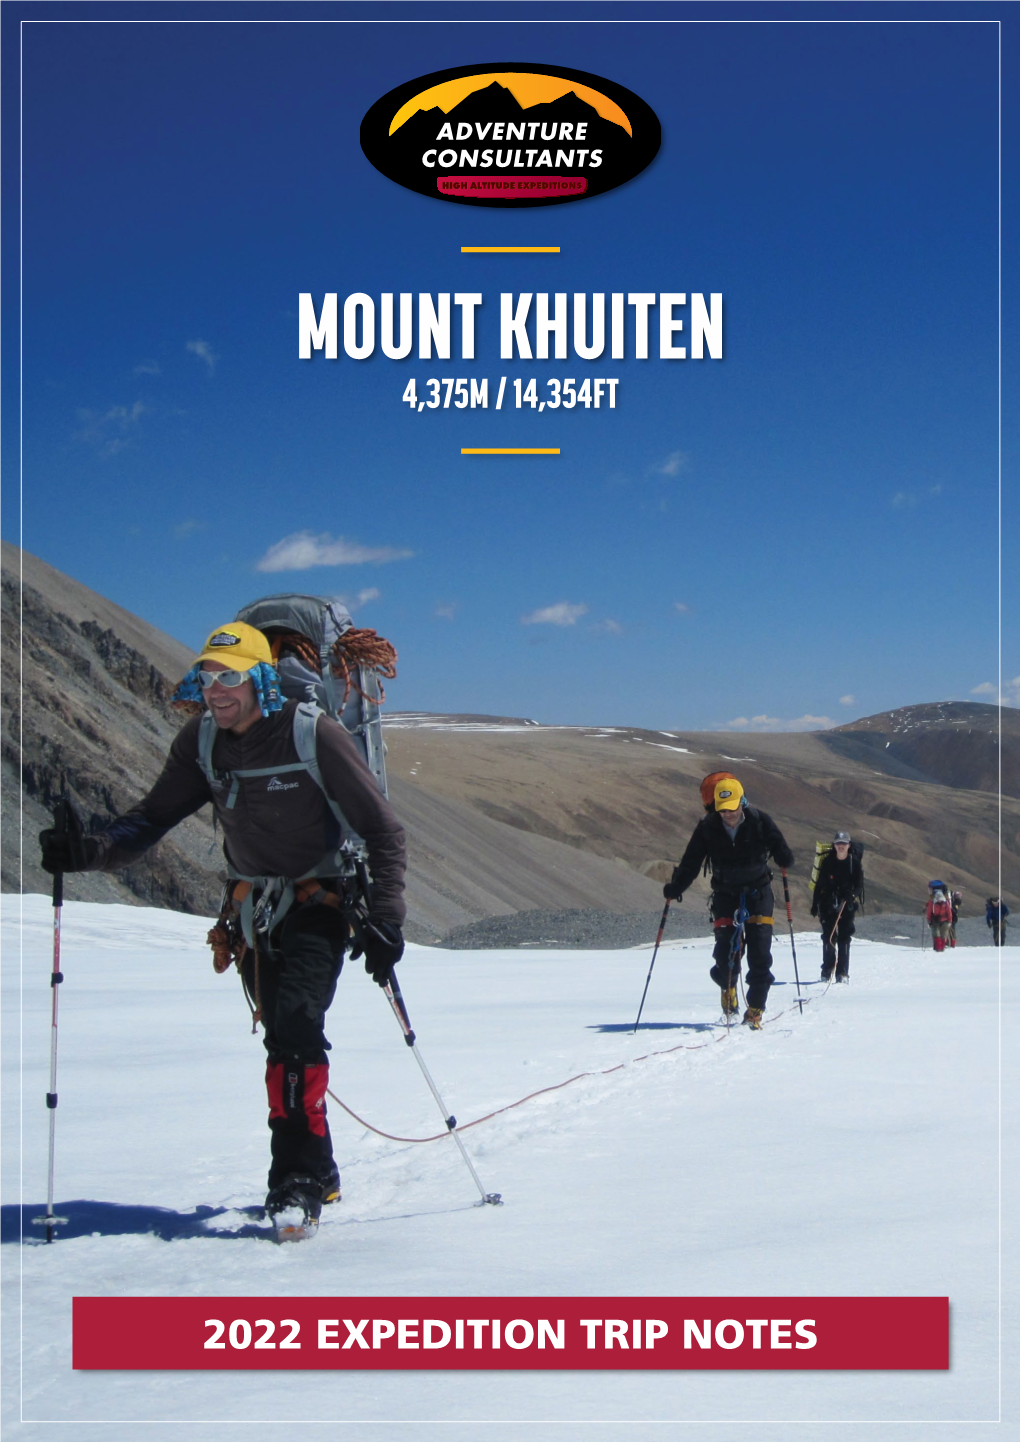 Mount Khuiten 4,375M / 14,354Ft